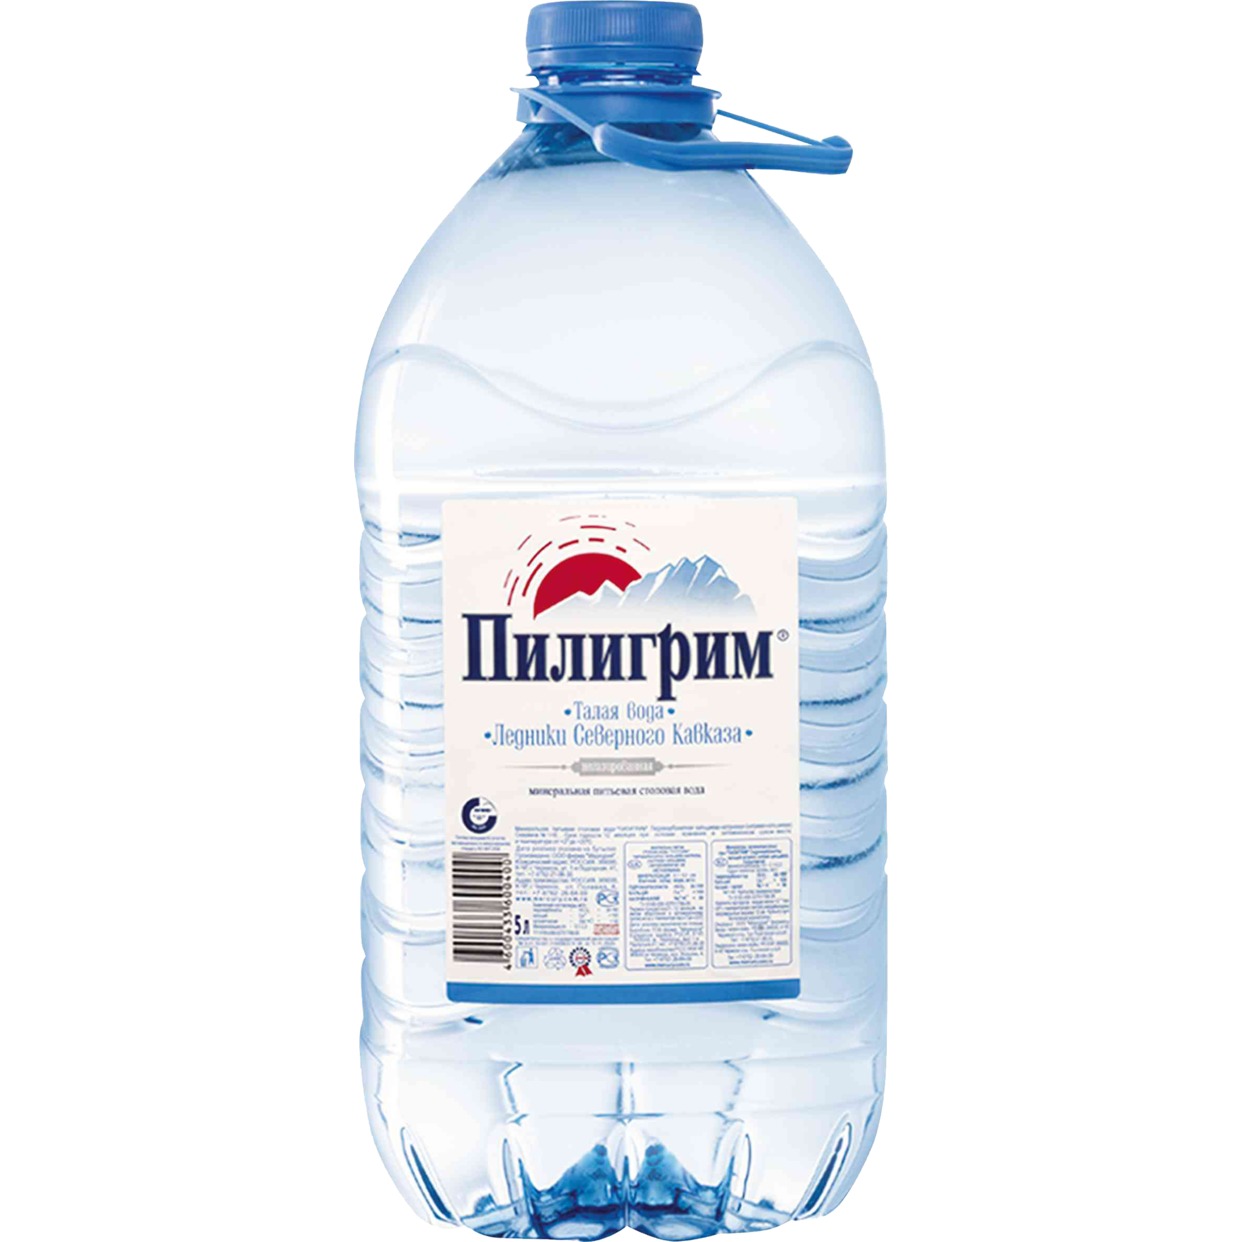 Вода Пилигрим, питьевая, 5 л по акции в Пятерочке